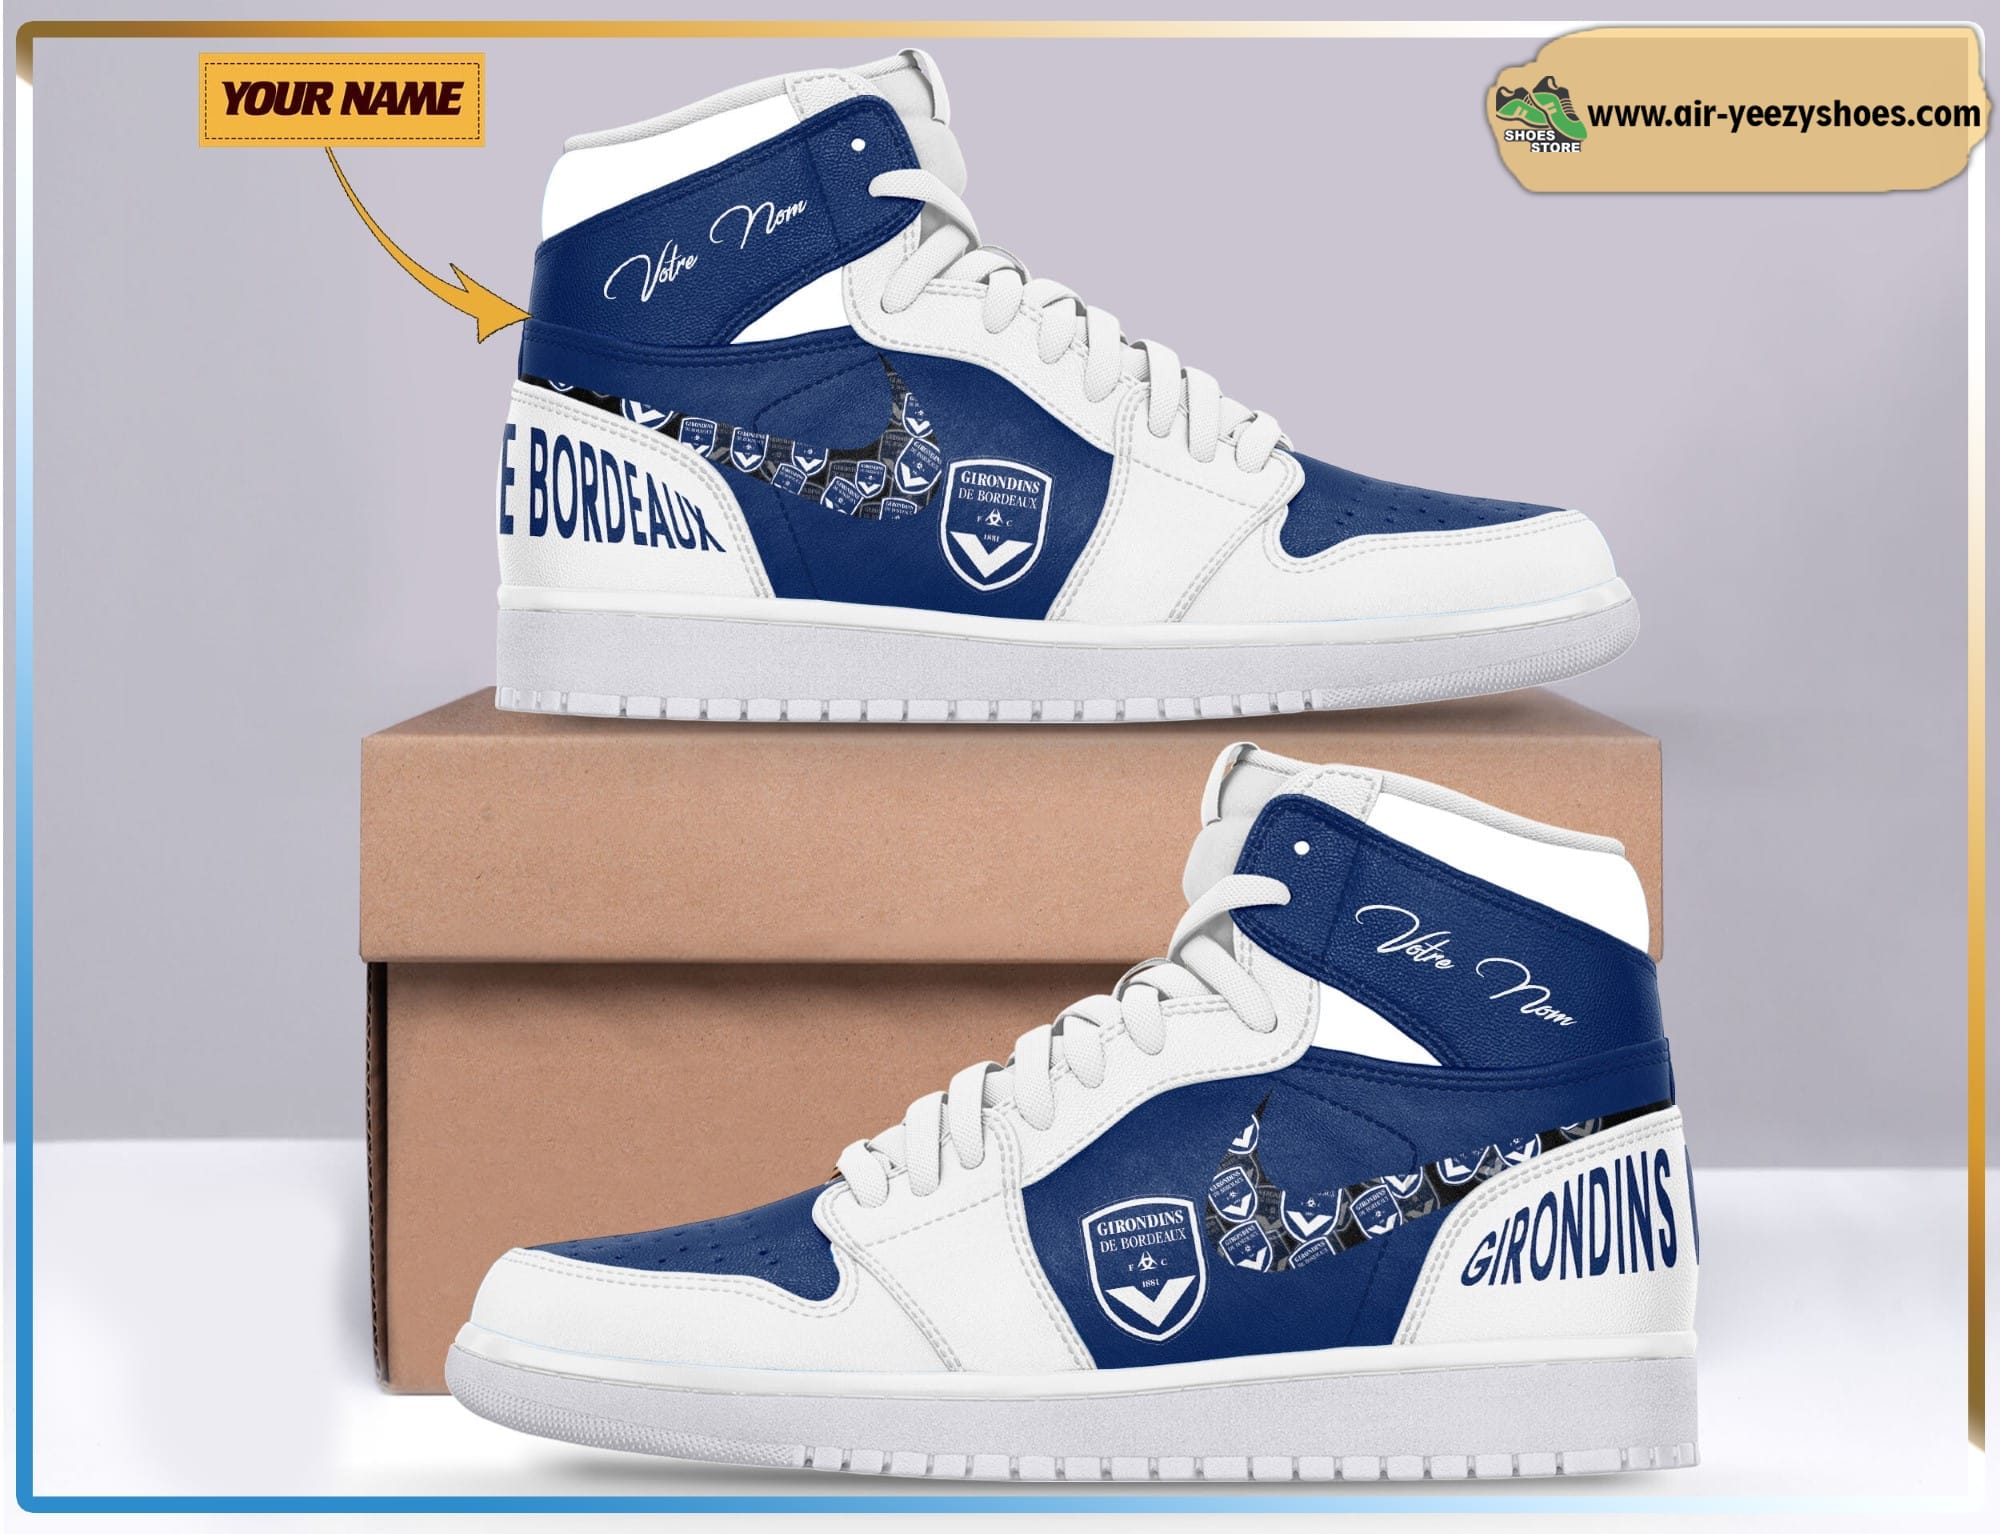 Girondins de Bordeaux Ligue 1 Air Jodan 1 High Top Sneaker Boots